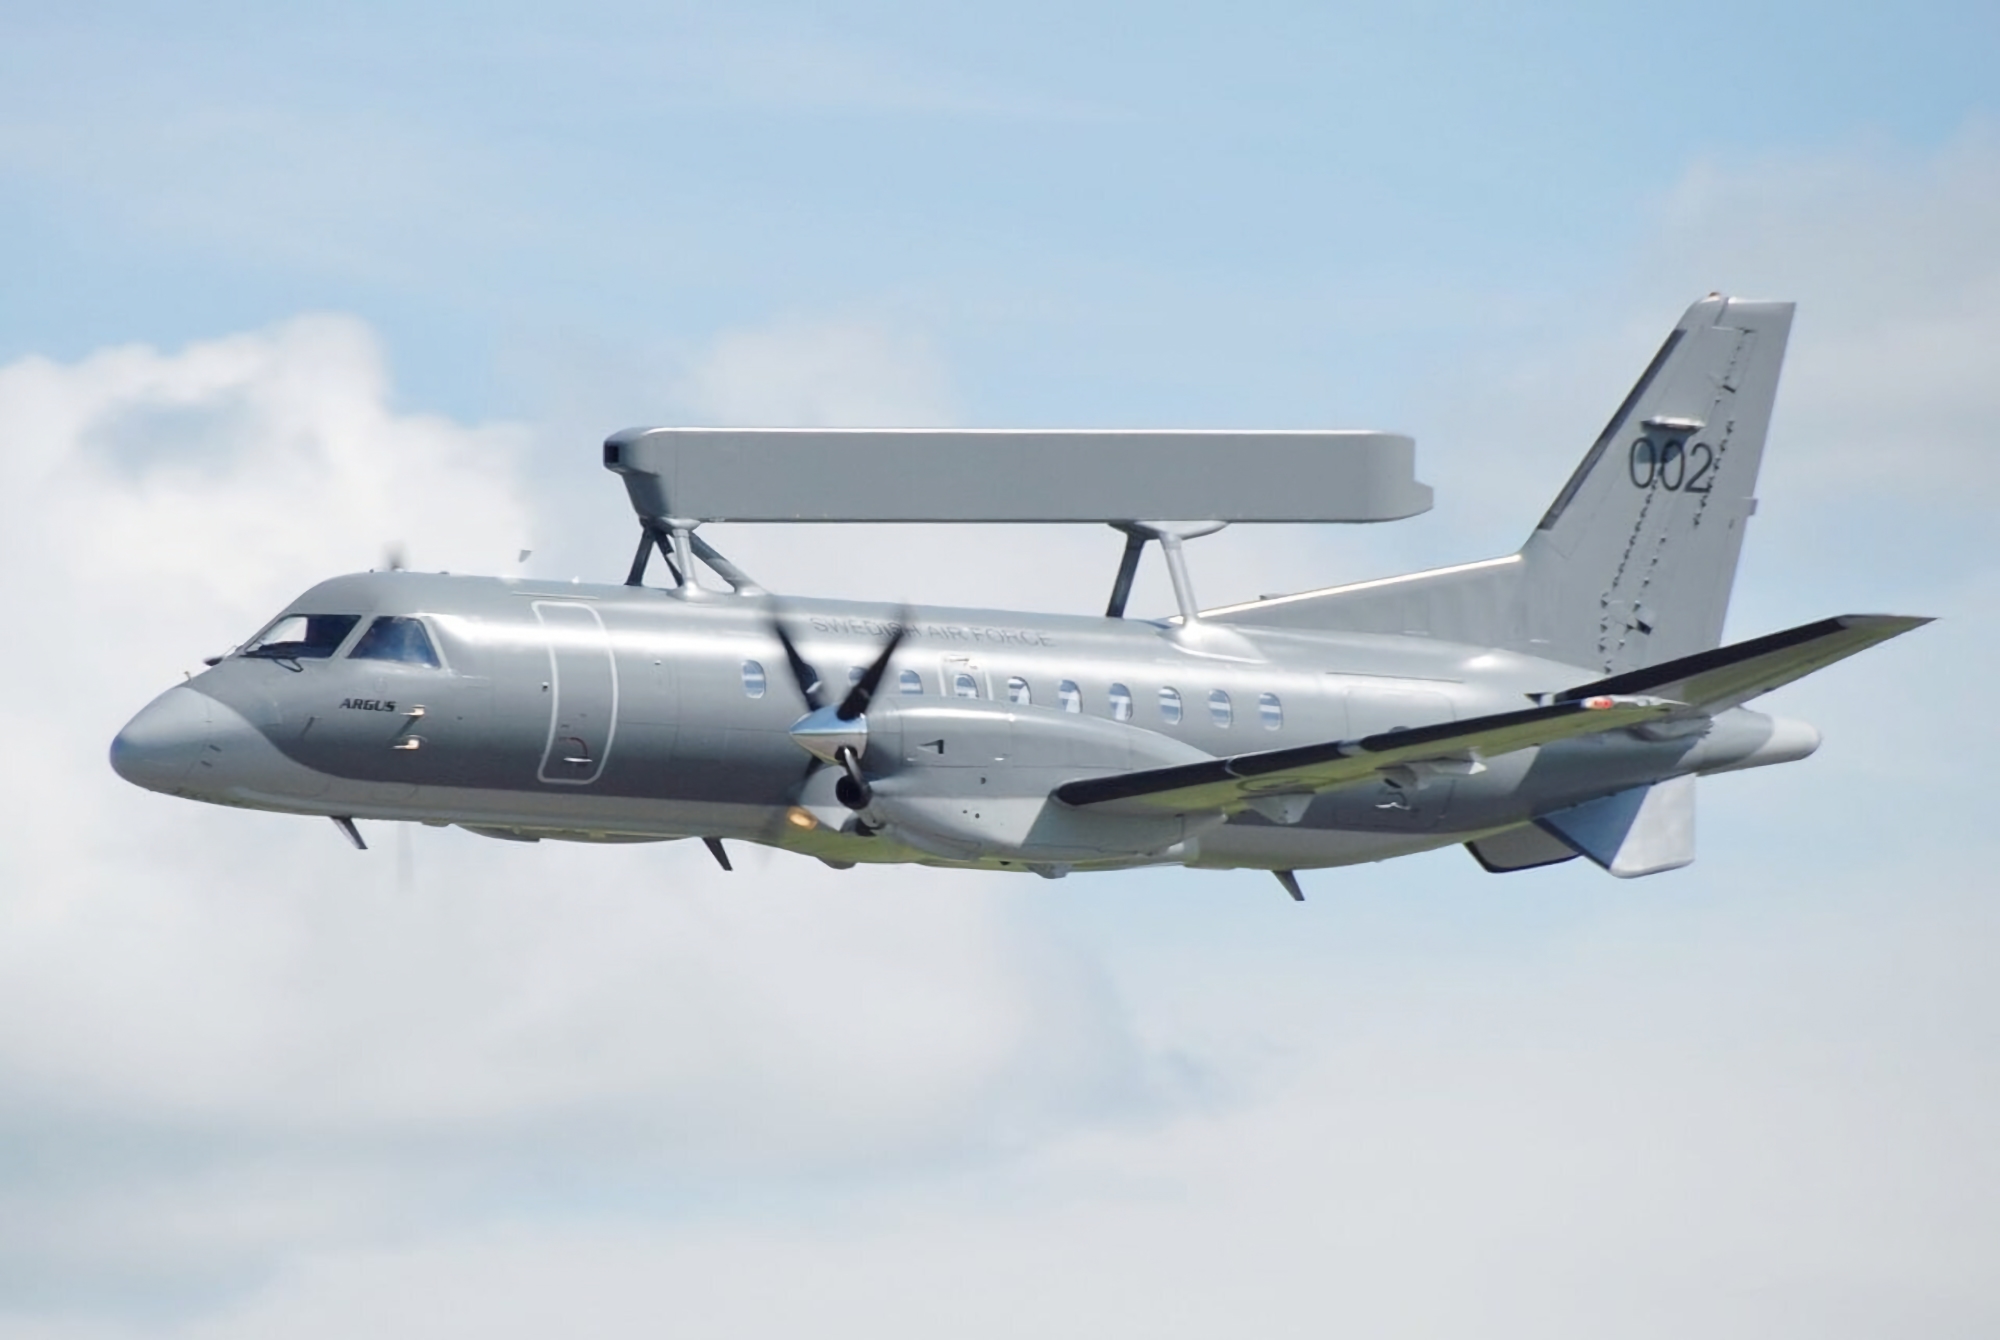 Szwecja przekaże Ukrainie samolot wykrywania i kontroli radarowej dalekiego zasięgu Saab ASC 890  